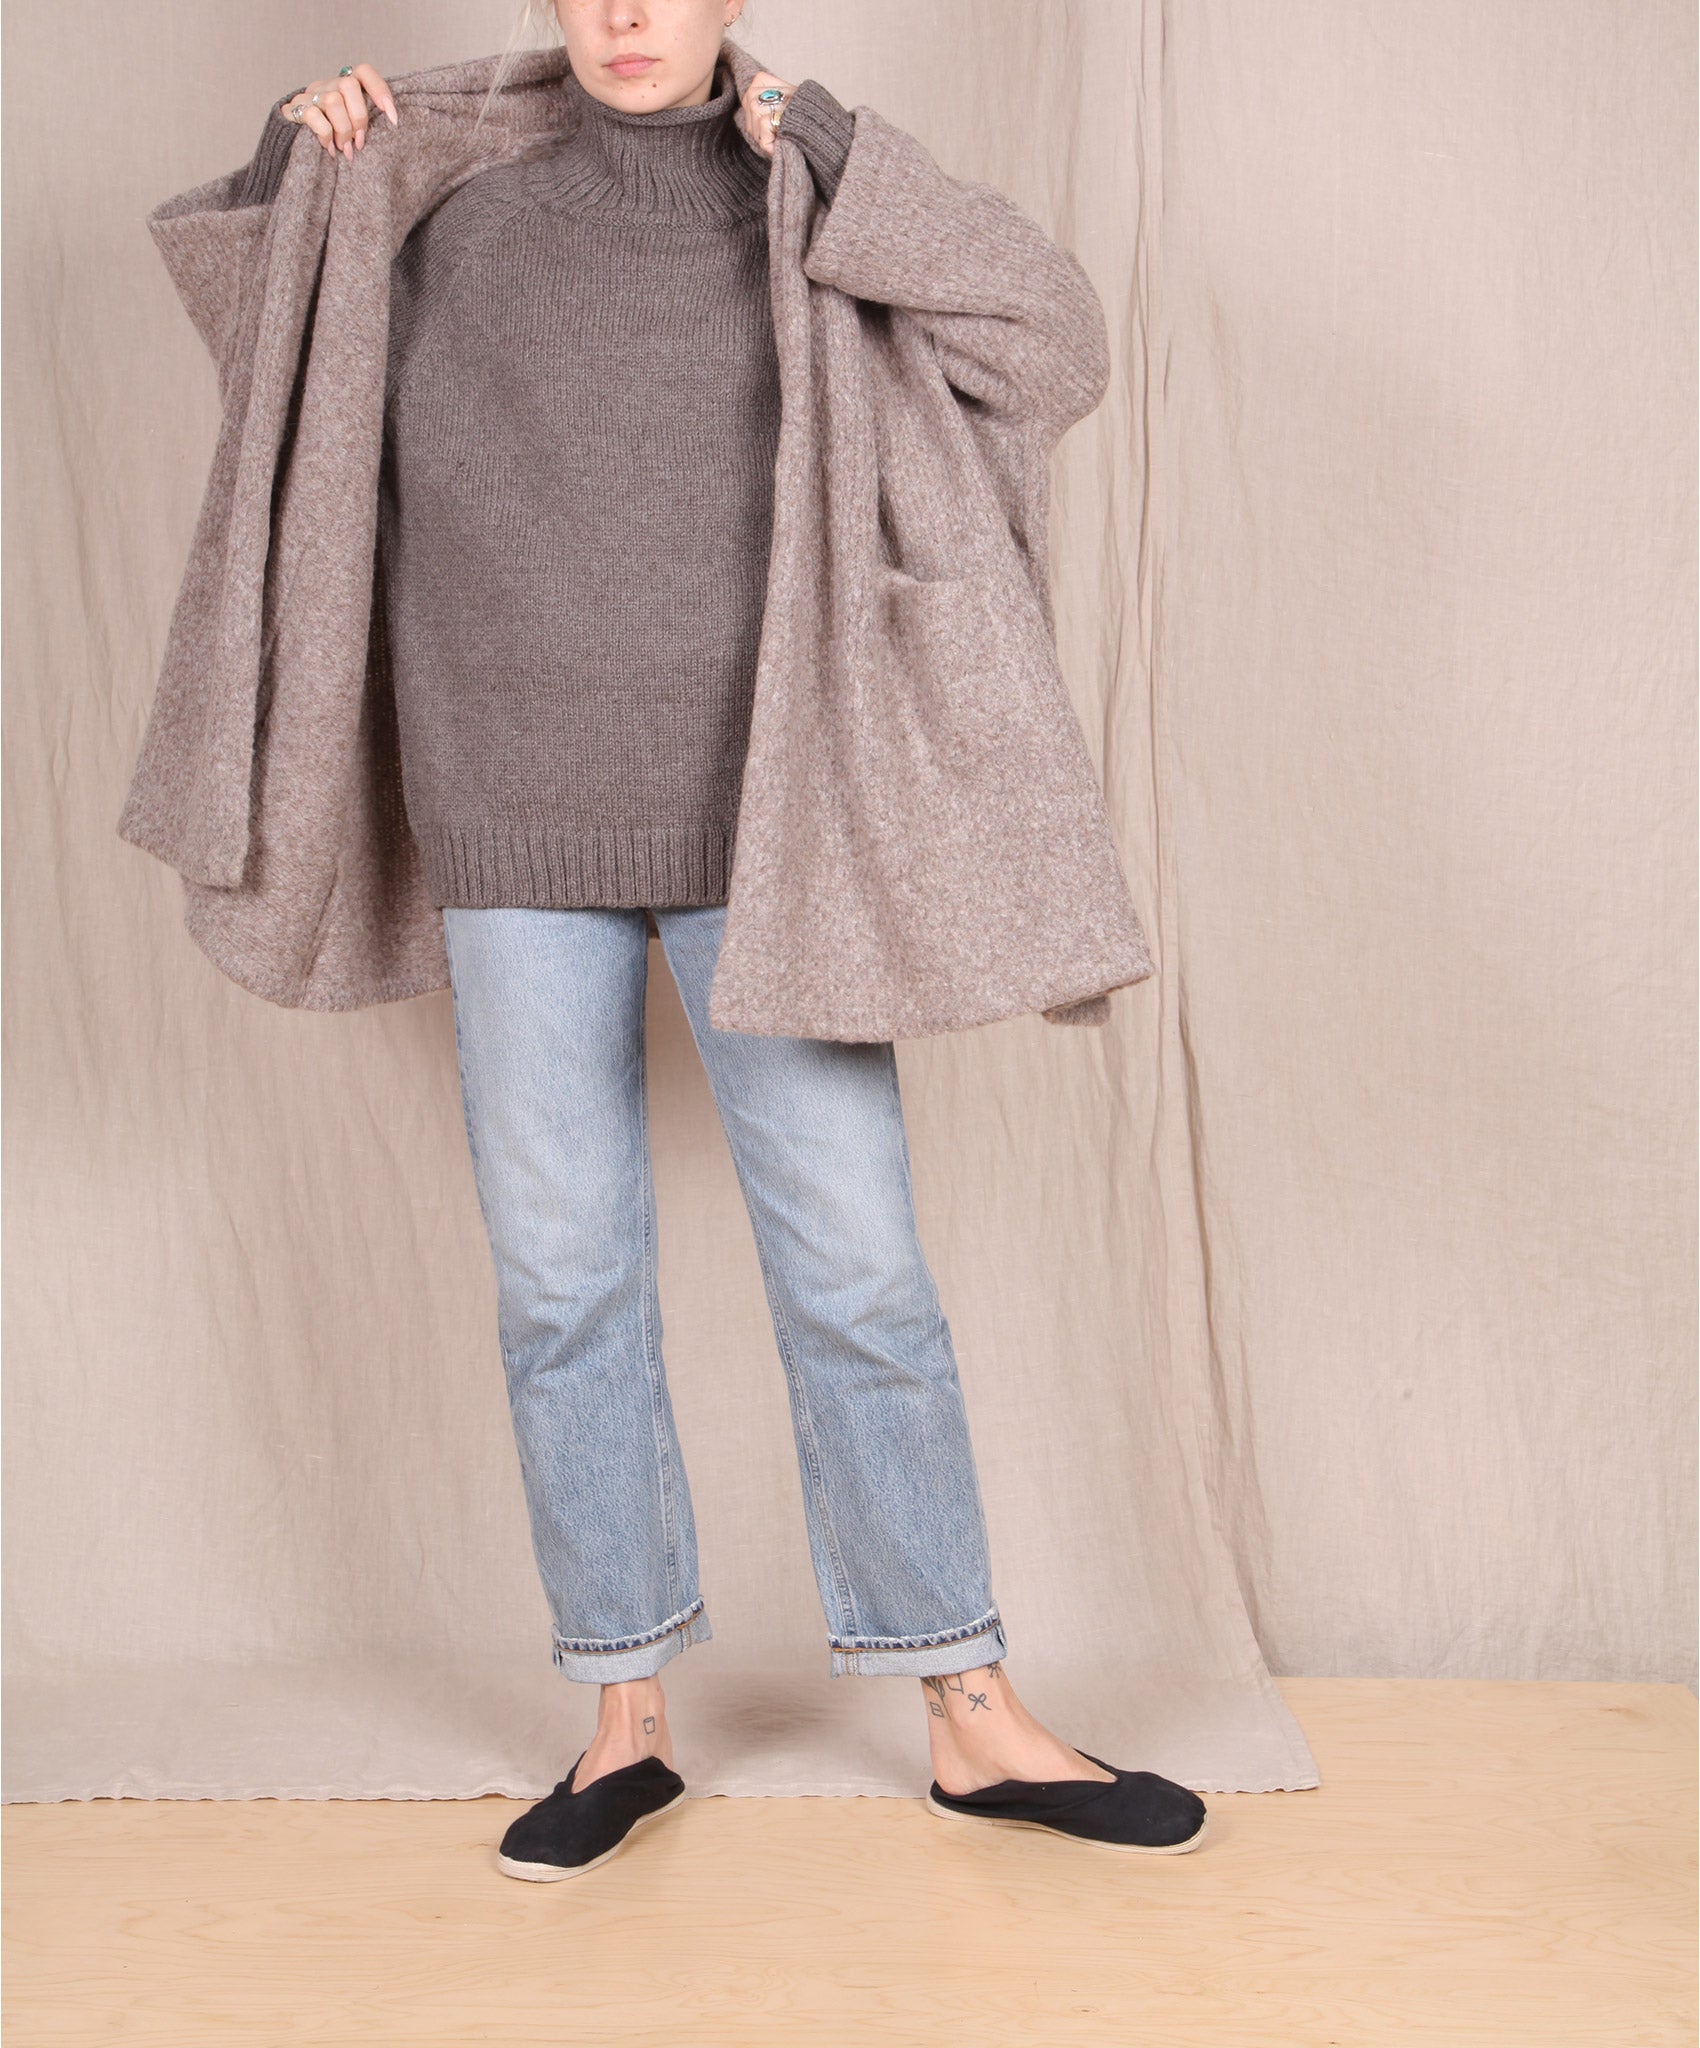 Atelier Delphine-Haori Sweater Coat // Deer